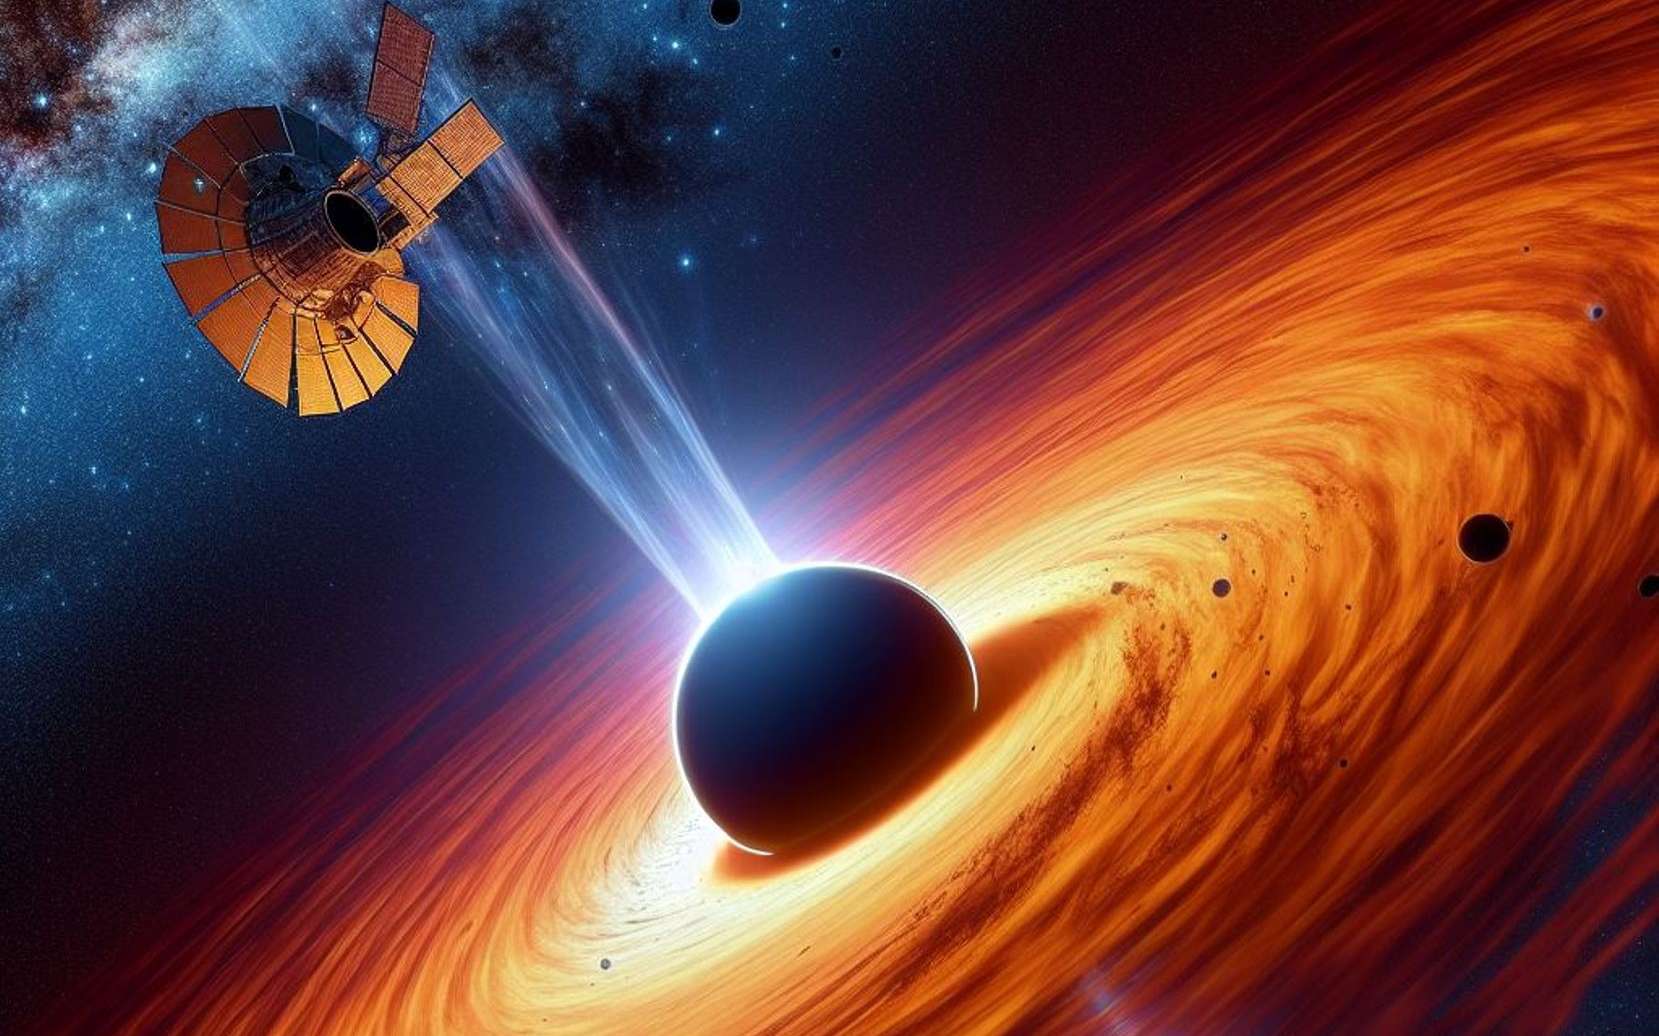 Découverte du trou noir stellaire le plus massif connu de la Voie lactée !